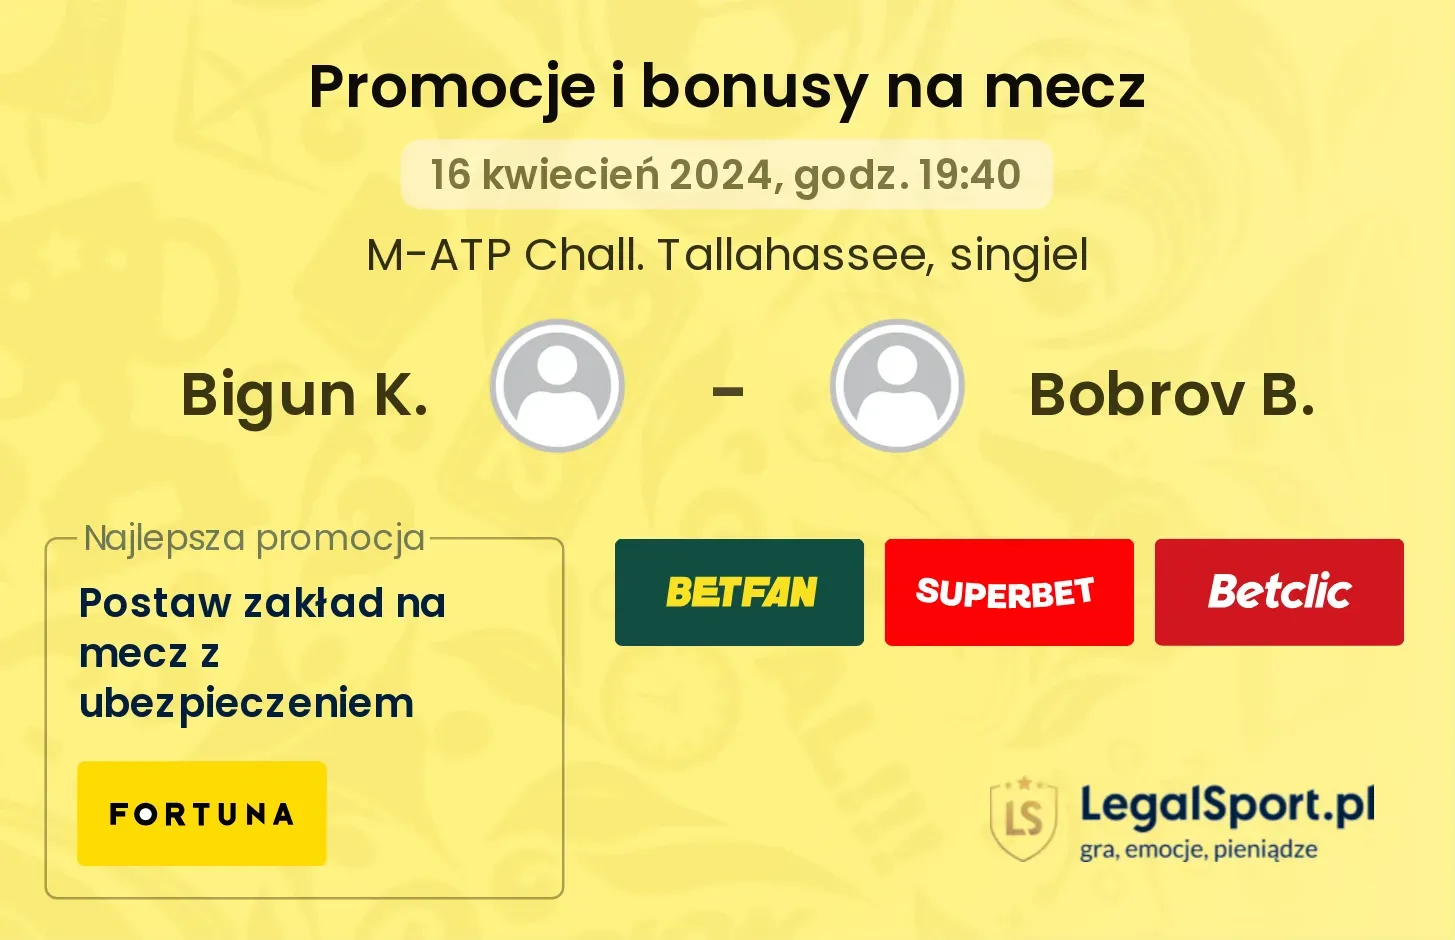 Bigun K. - Bobrov B. promocje bonusy na mecz